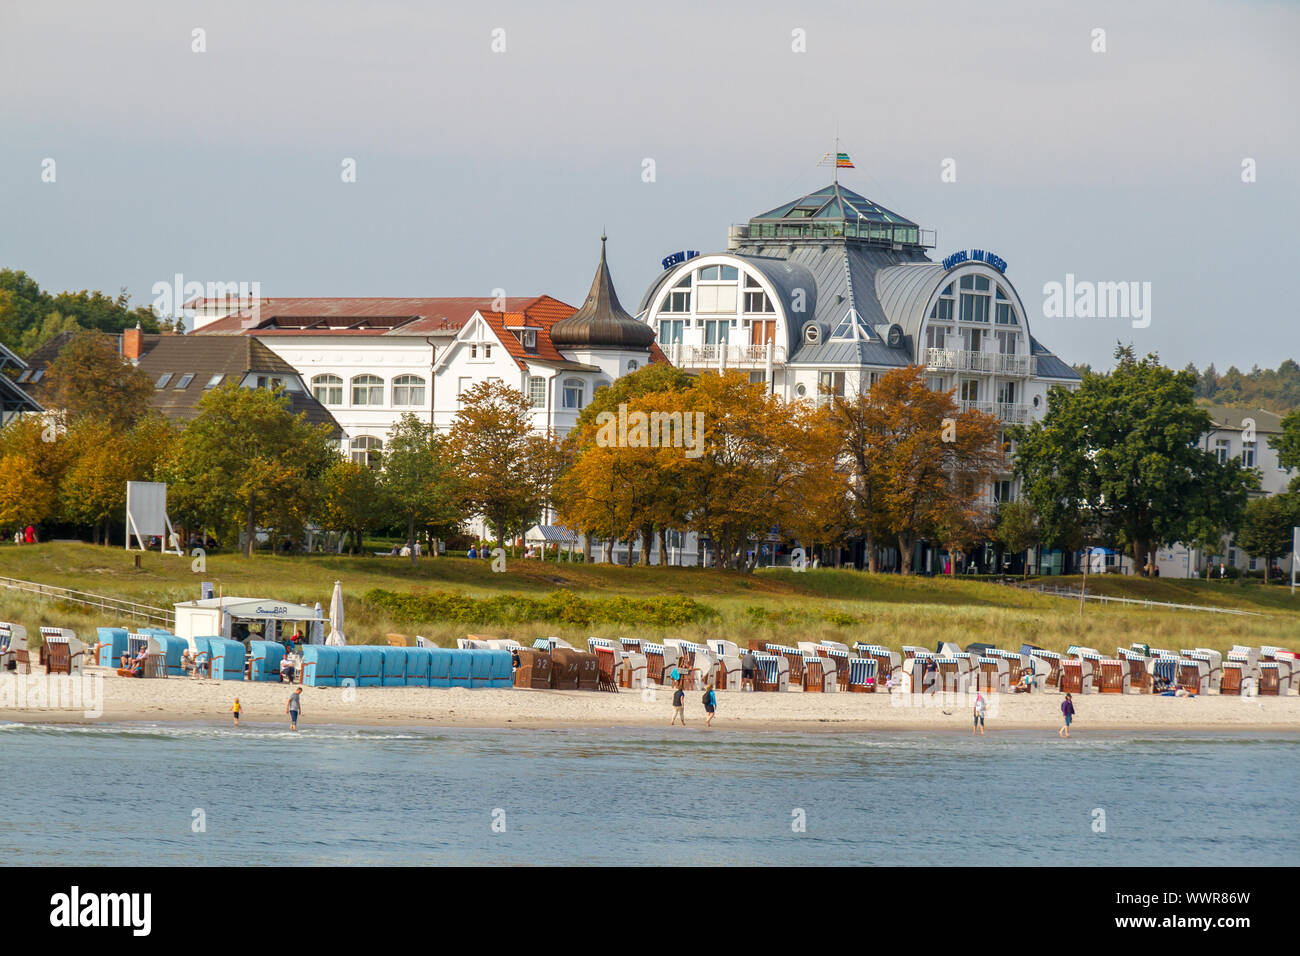 Ciudad balneario Binz, isla del Mar Báltico Rügen Foto de stock